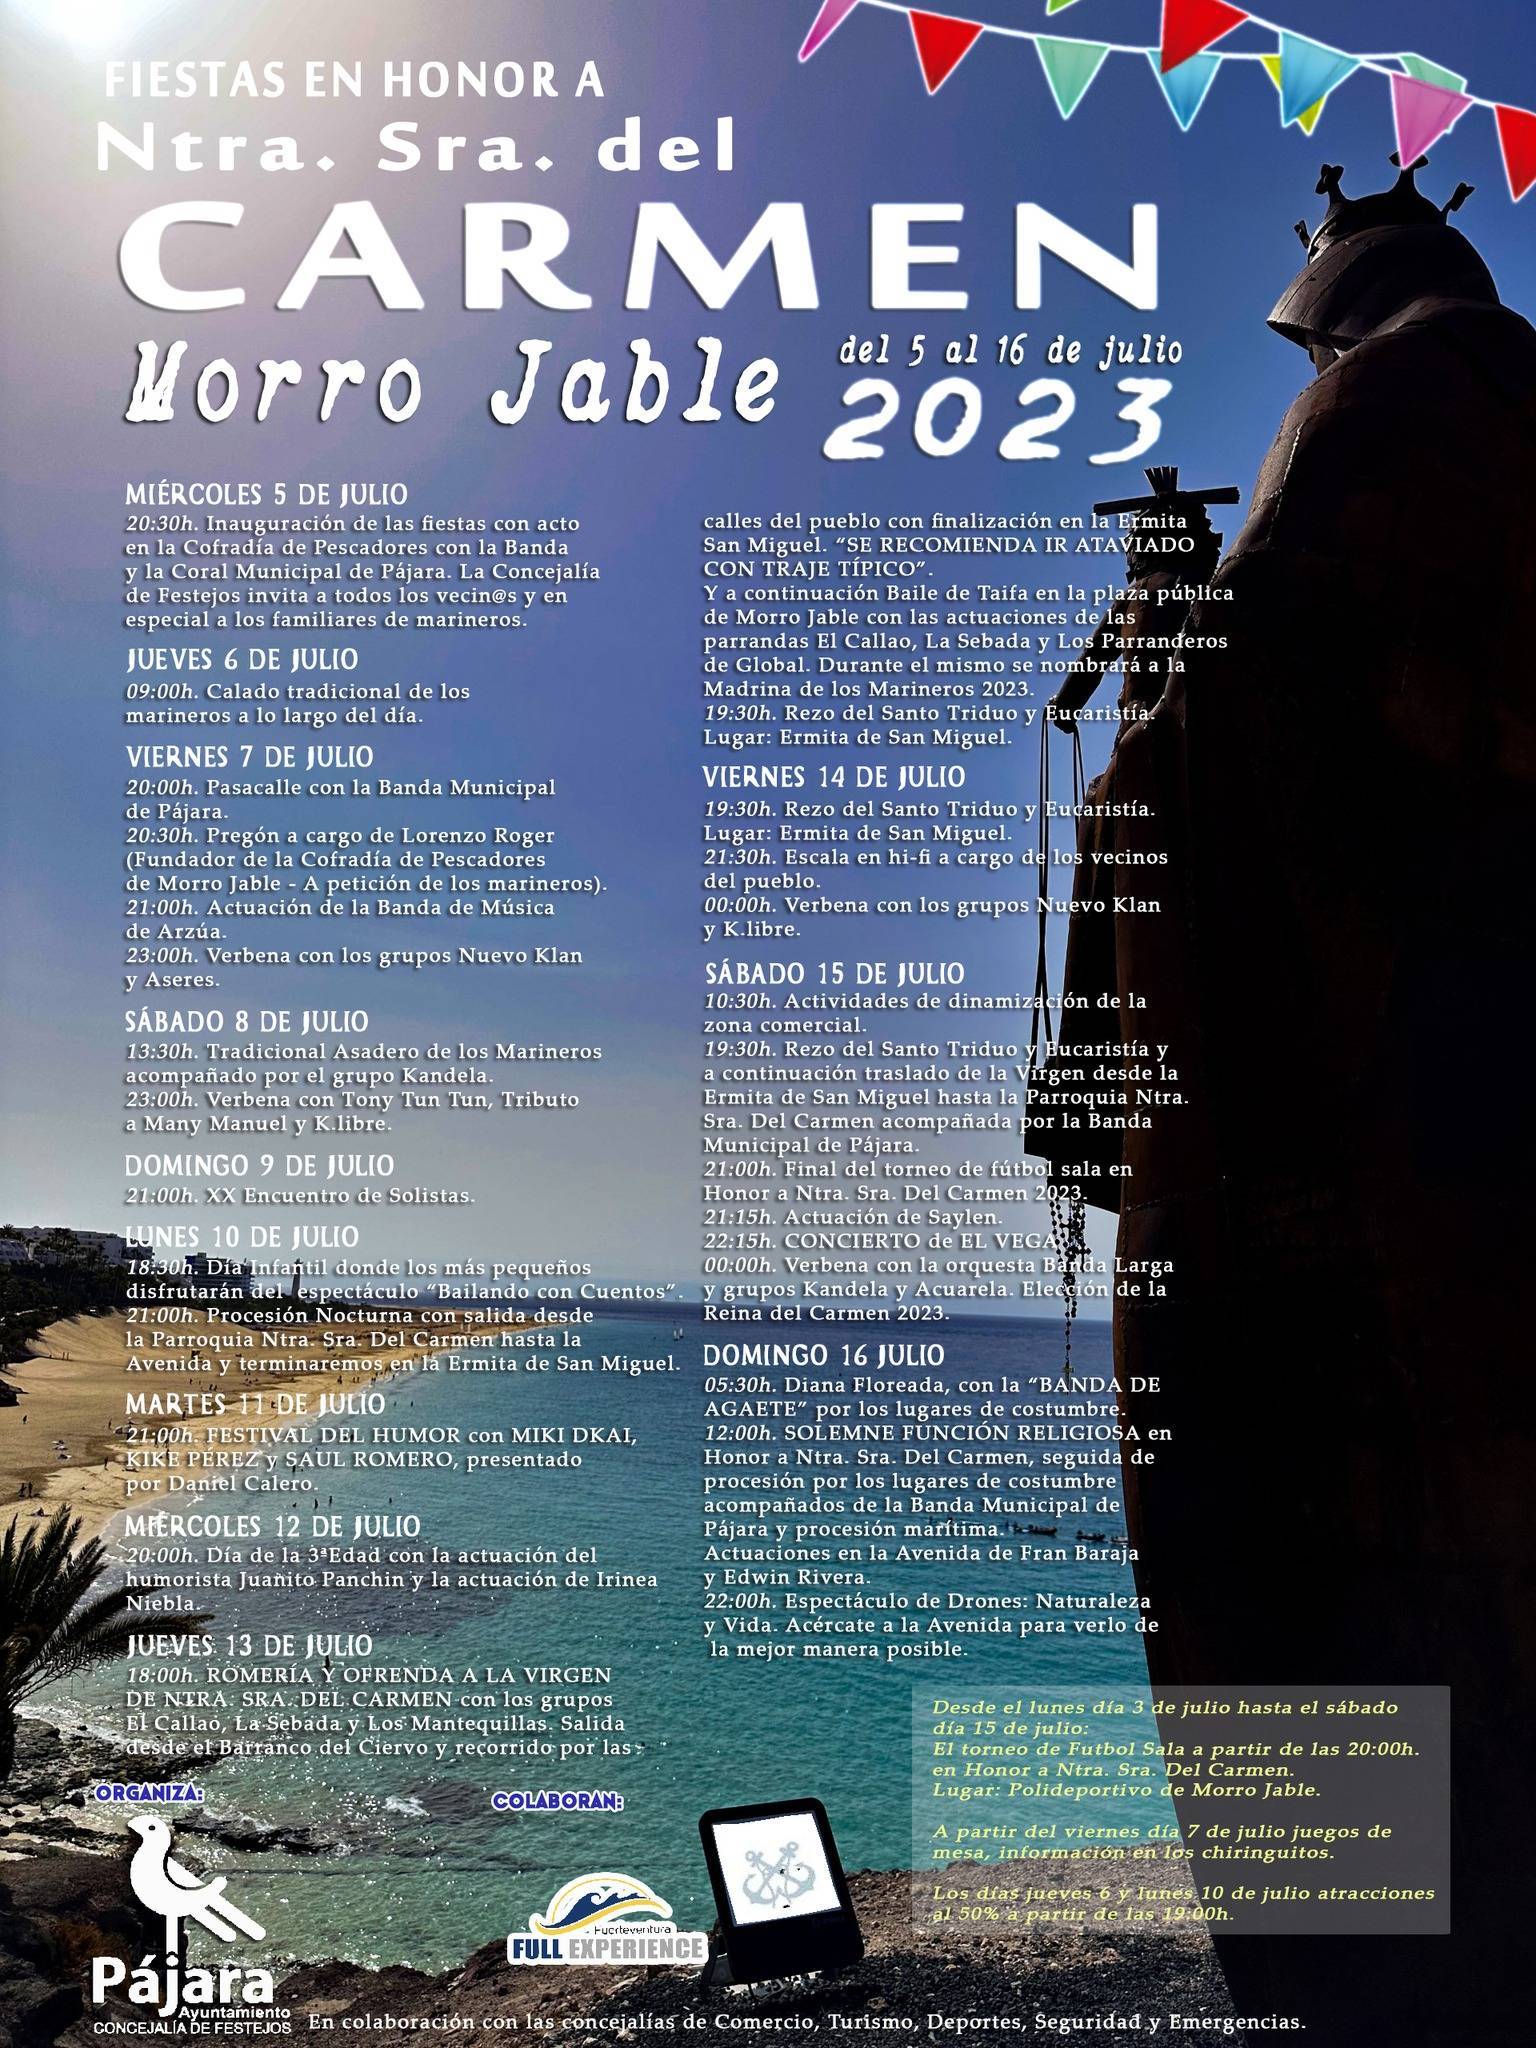 Fiestas en honor a Nuestra Señora del Carmen (2023) - Morro Jable (Las Palmas)